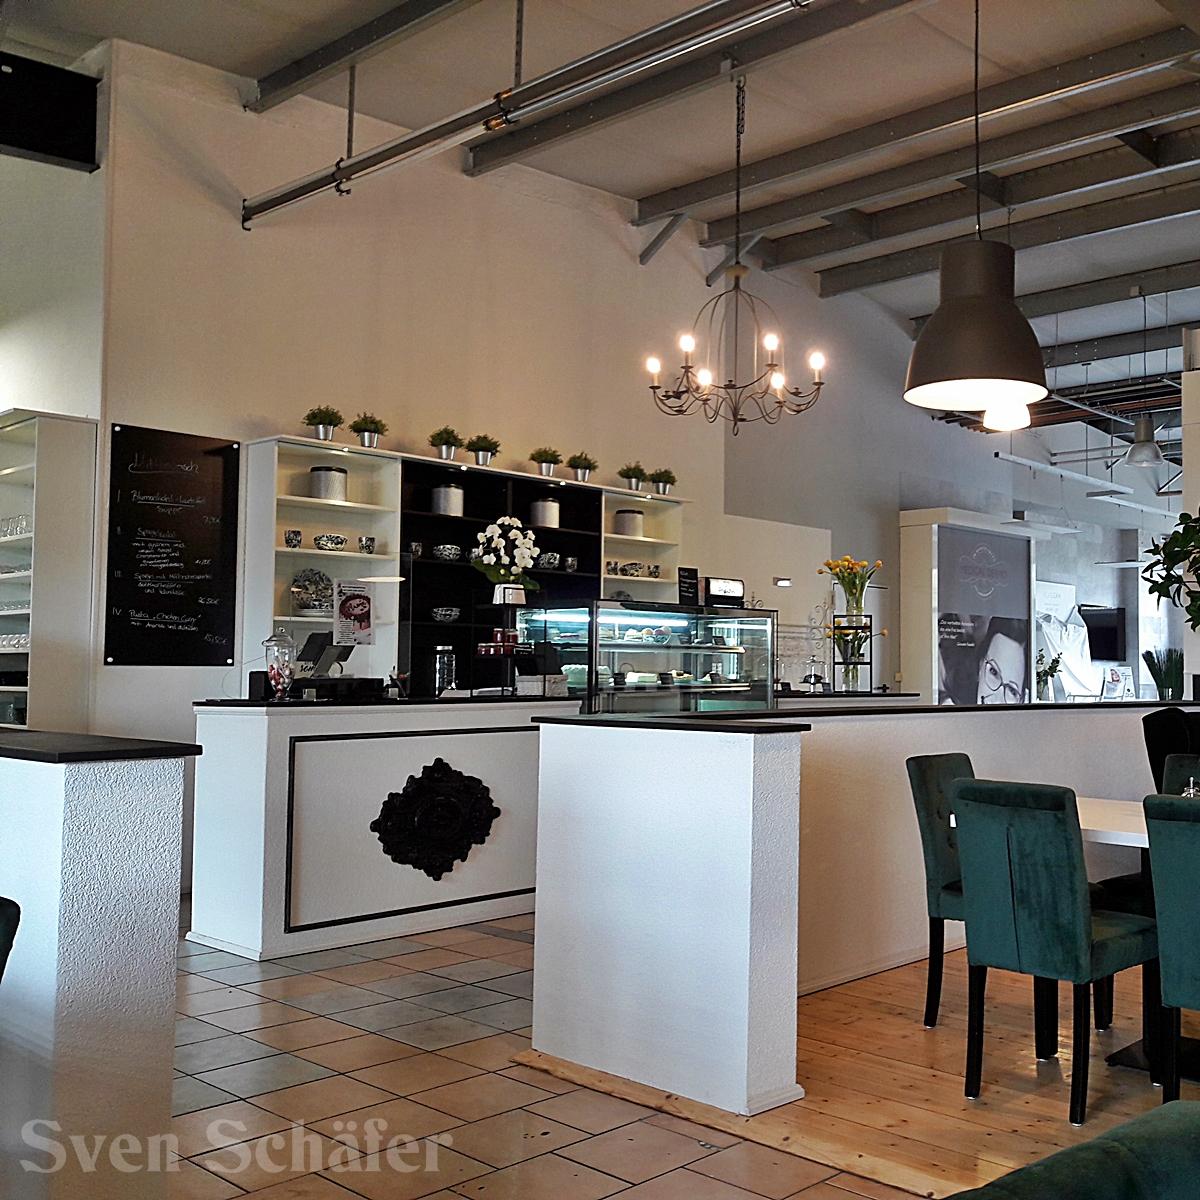 Restaurant "Cafe Edelweiss im Rosenrot" in Hemmingen